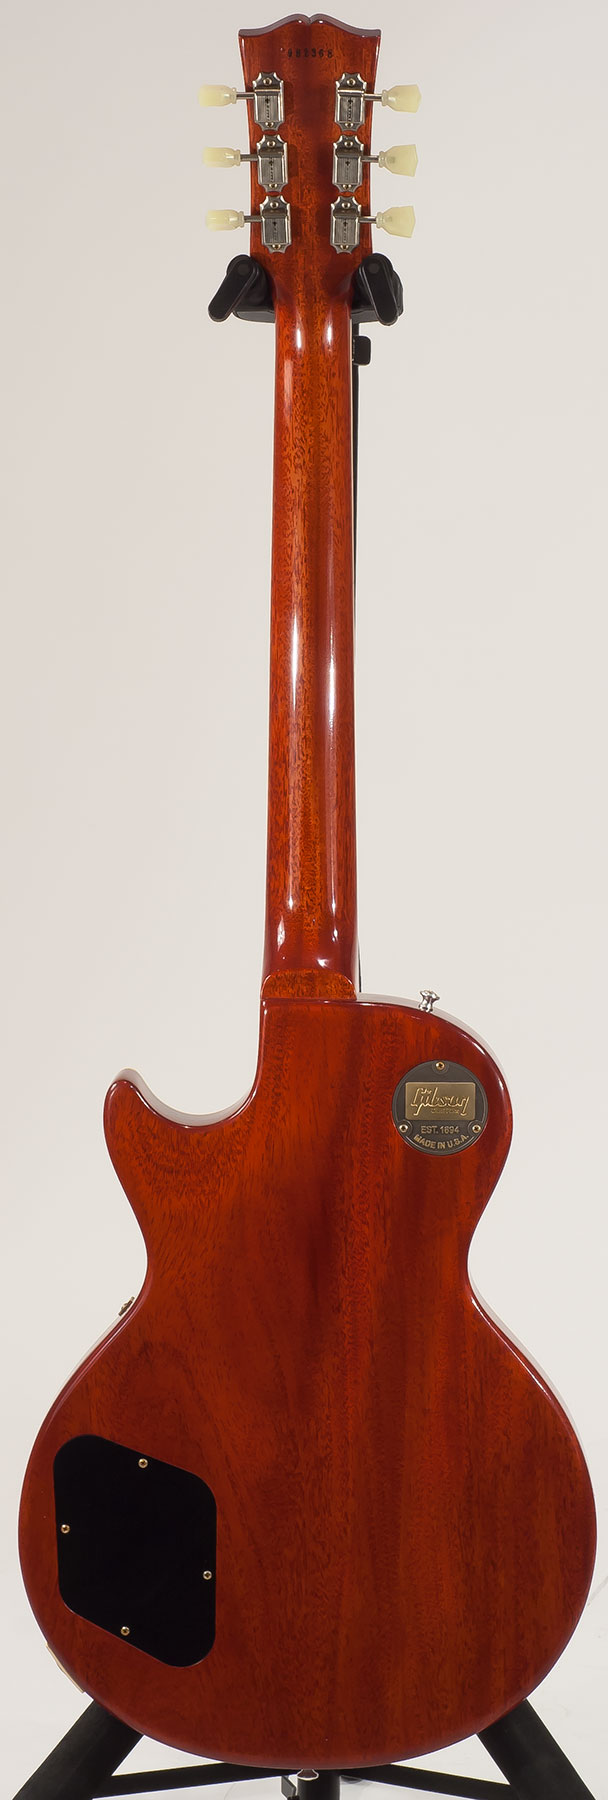 Gibson Custom Shop Les Paul Standard 1959 2h Ht Rw - Vos Royal Teaburst - Guitare Électrique Single Cut - Variation 1